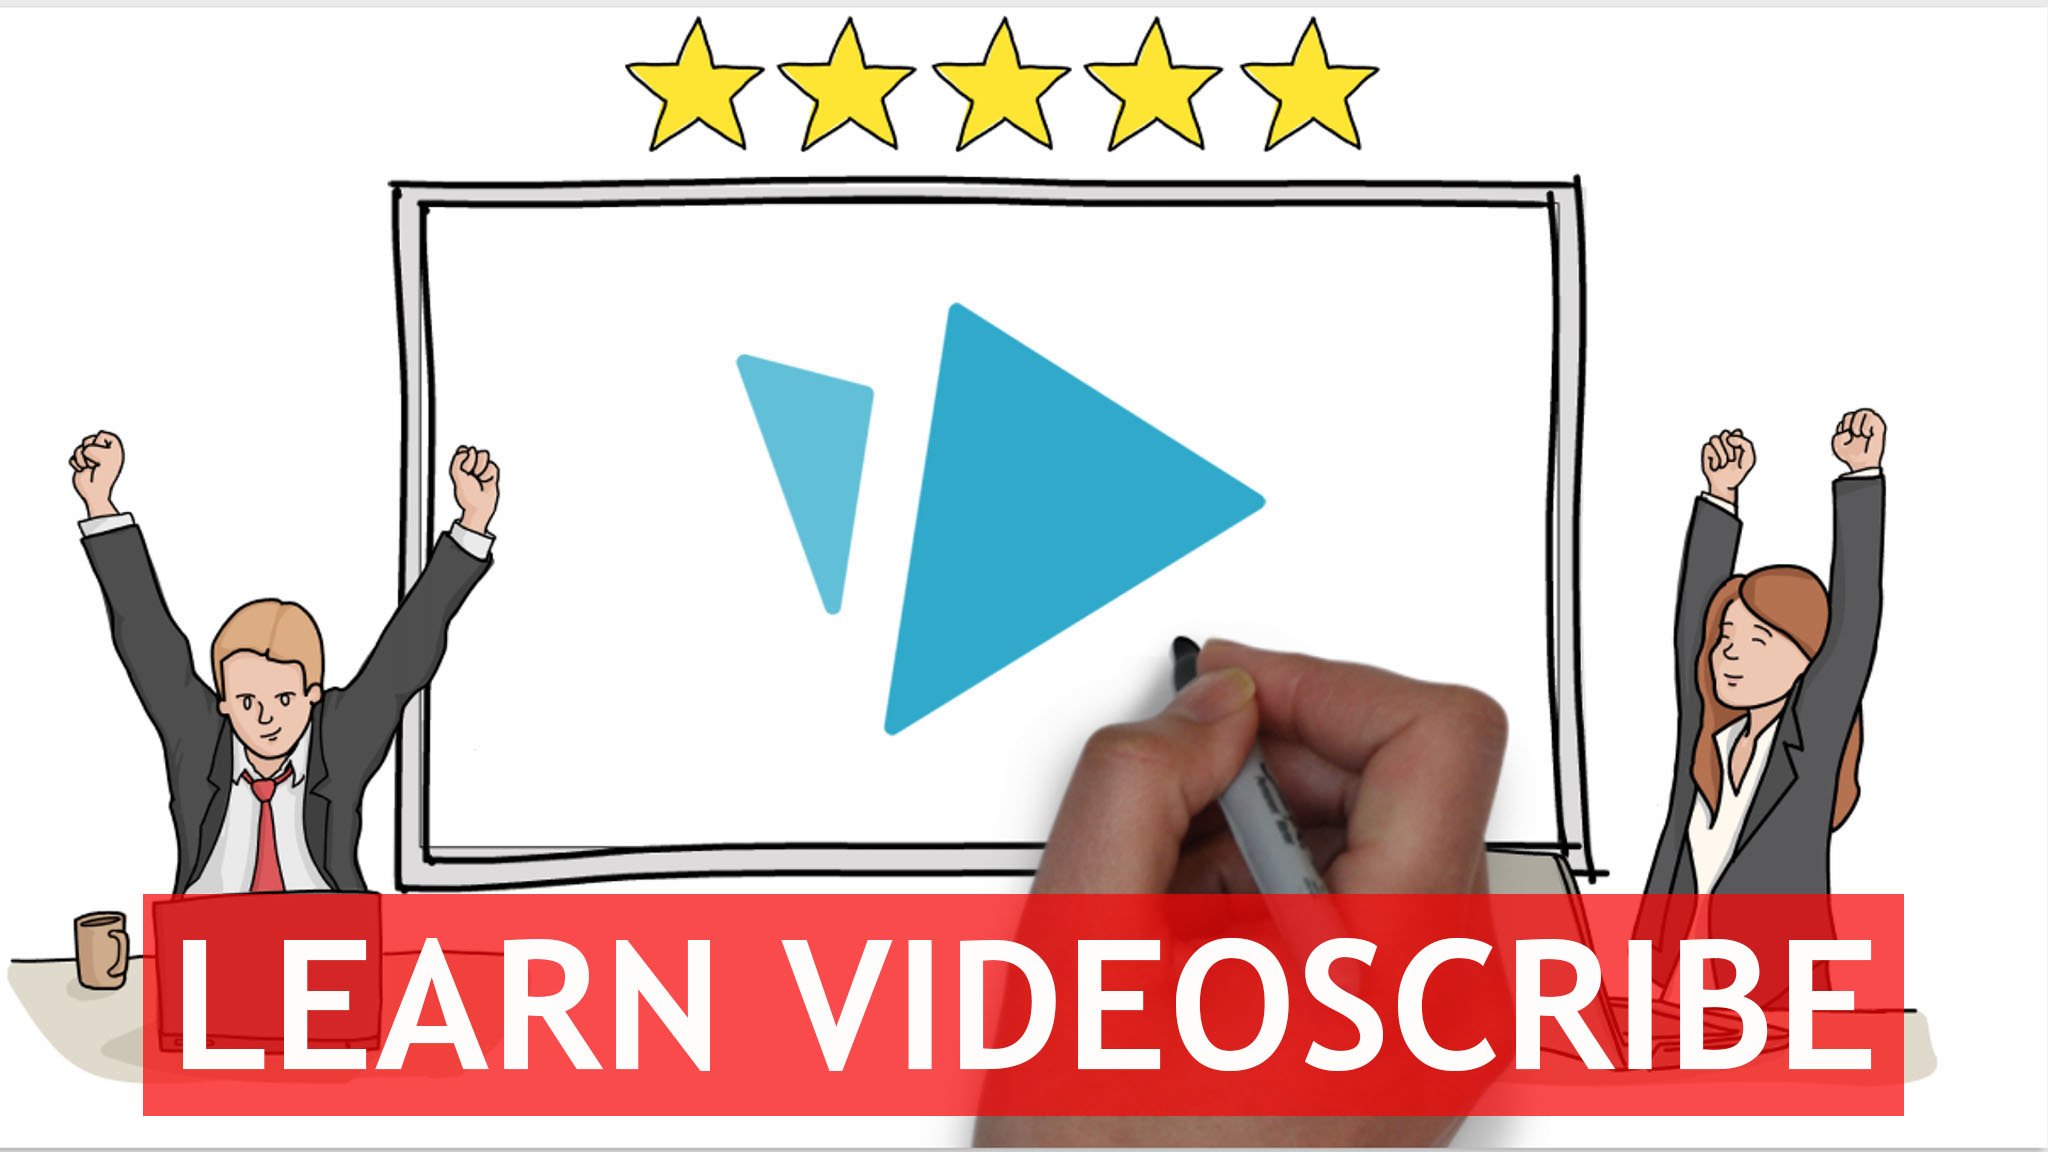 آموزش VIDEOSCRIBE انیمیشن های تخته سفید: یک کلاس کارشناسی ارشد در مورد نحوه ایجاد ویدیوهای انیمیشن تخته سفید